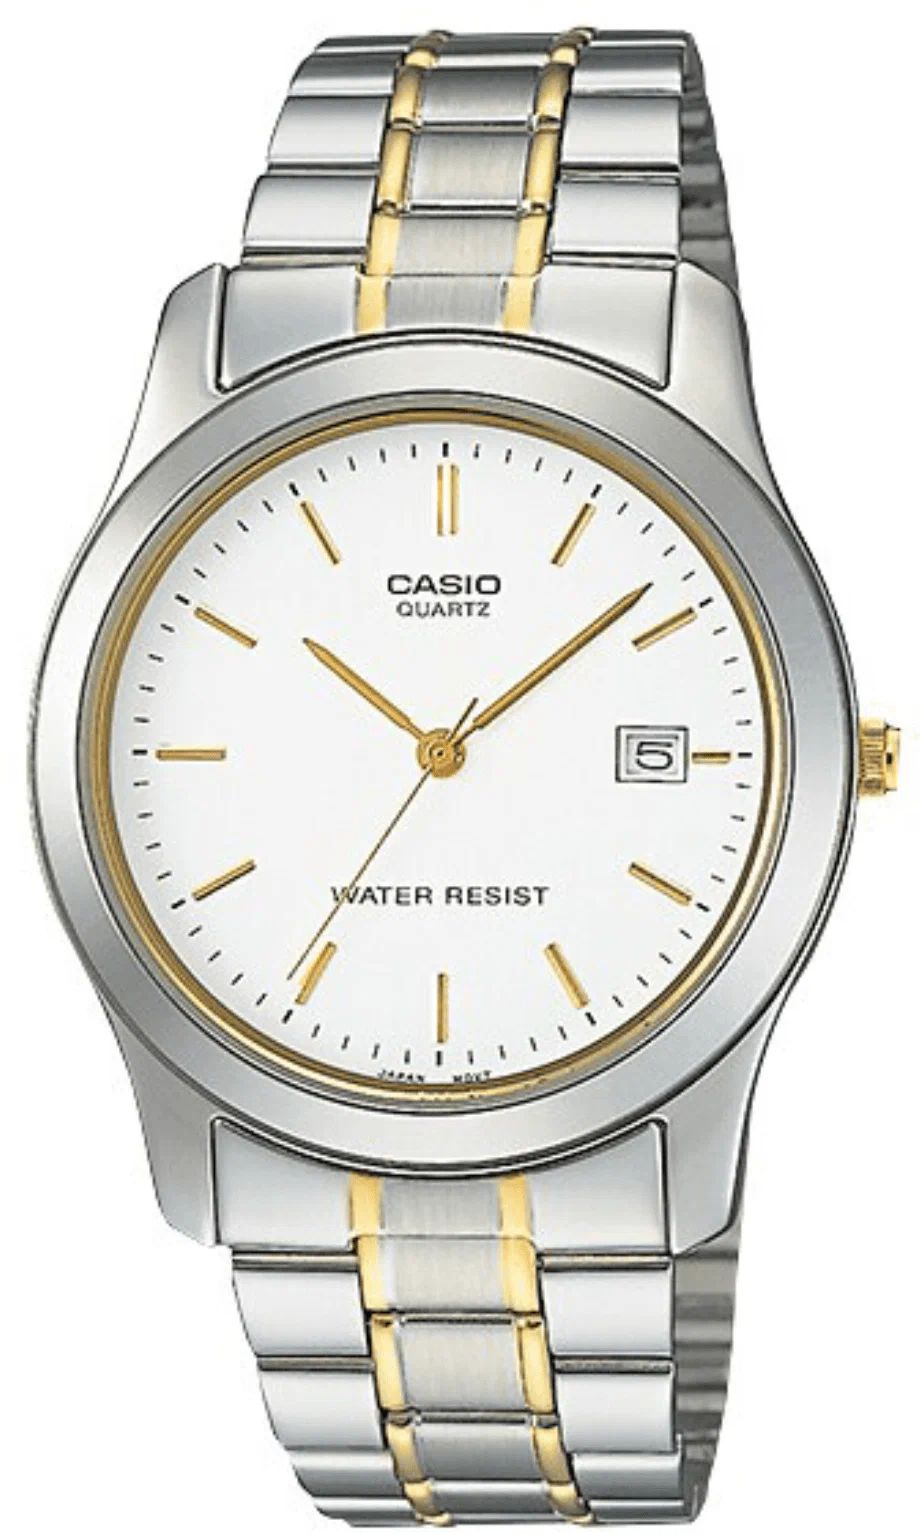 Наручные часы Casio MTP-1141G-7A часы наручные casio mtp 1314l 7a